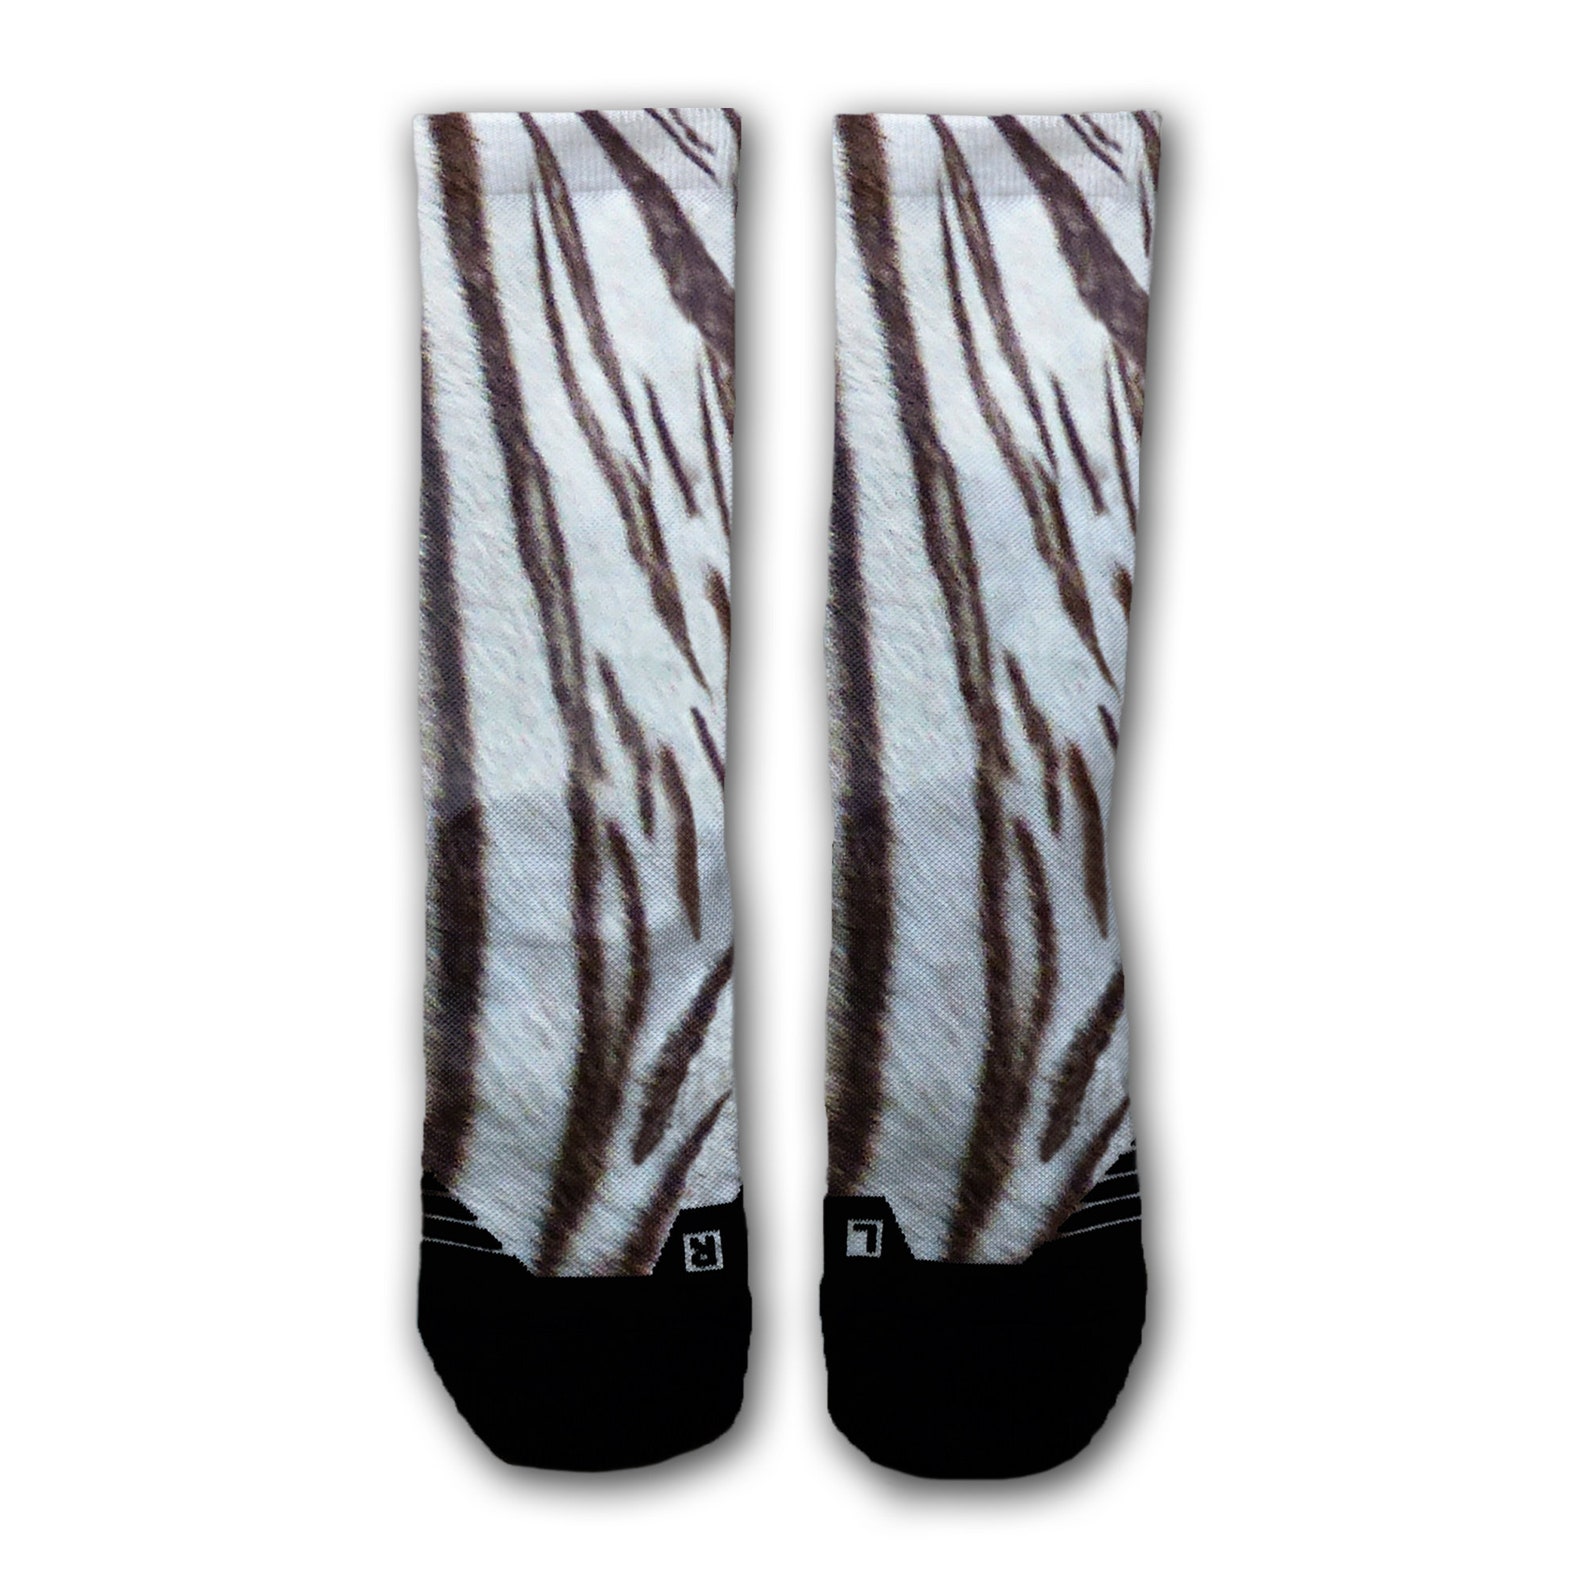 Tiger Stripe Sport Socks Wild Animal Socks White Tiger | Etsy